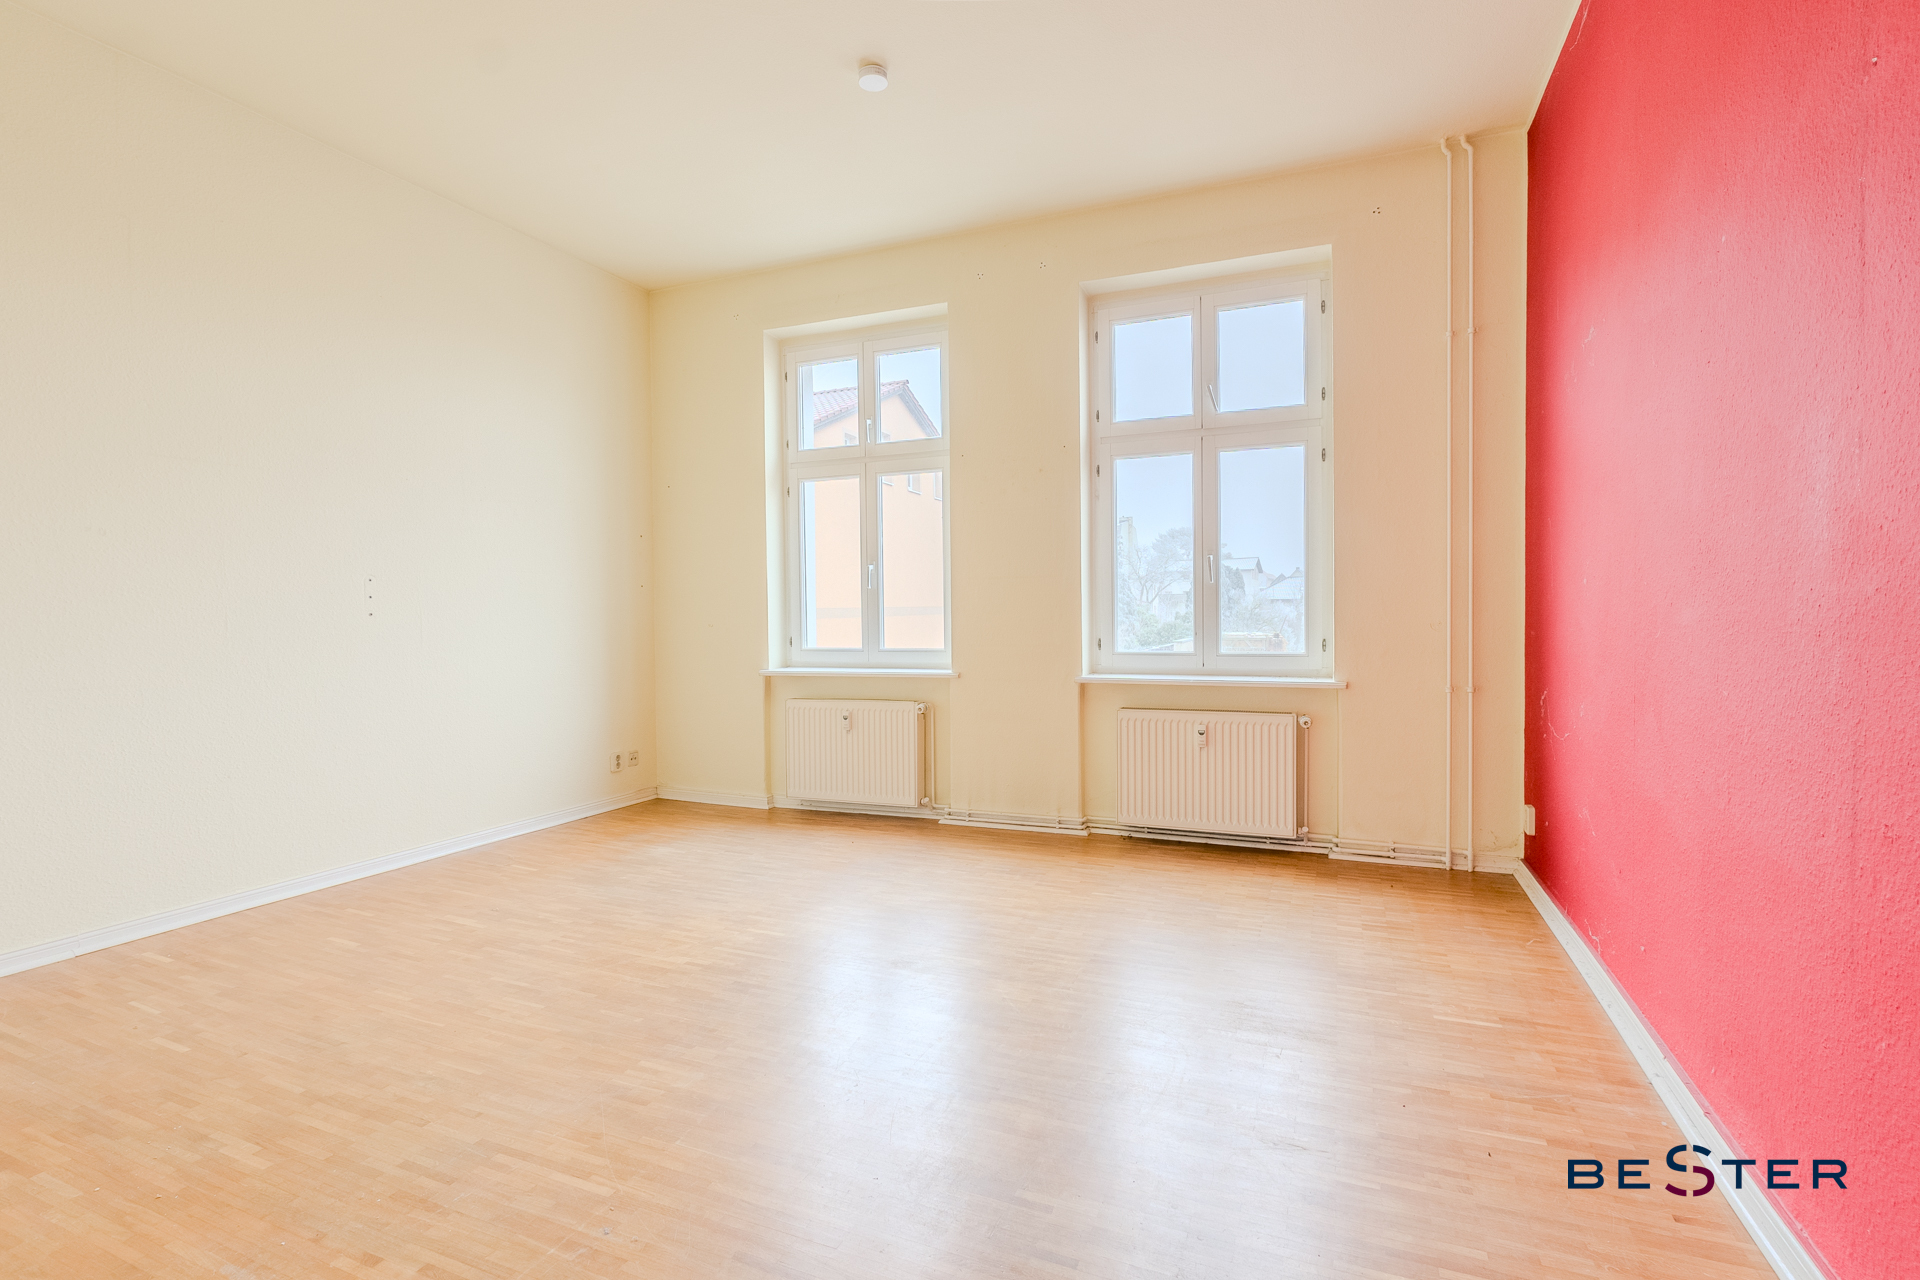 Bezugsfreie 4-Zimmer-Wohnung in ruhiger Seitenstraße, mögl. mit KFW & Extra-Abschreibung, 14469 Potsdam / Bornstedt